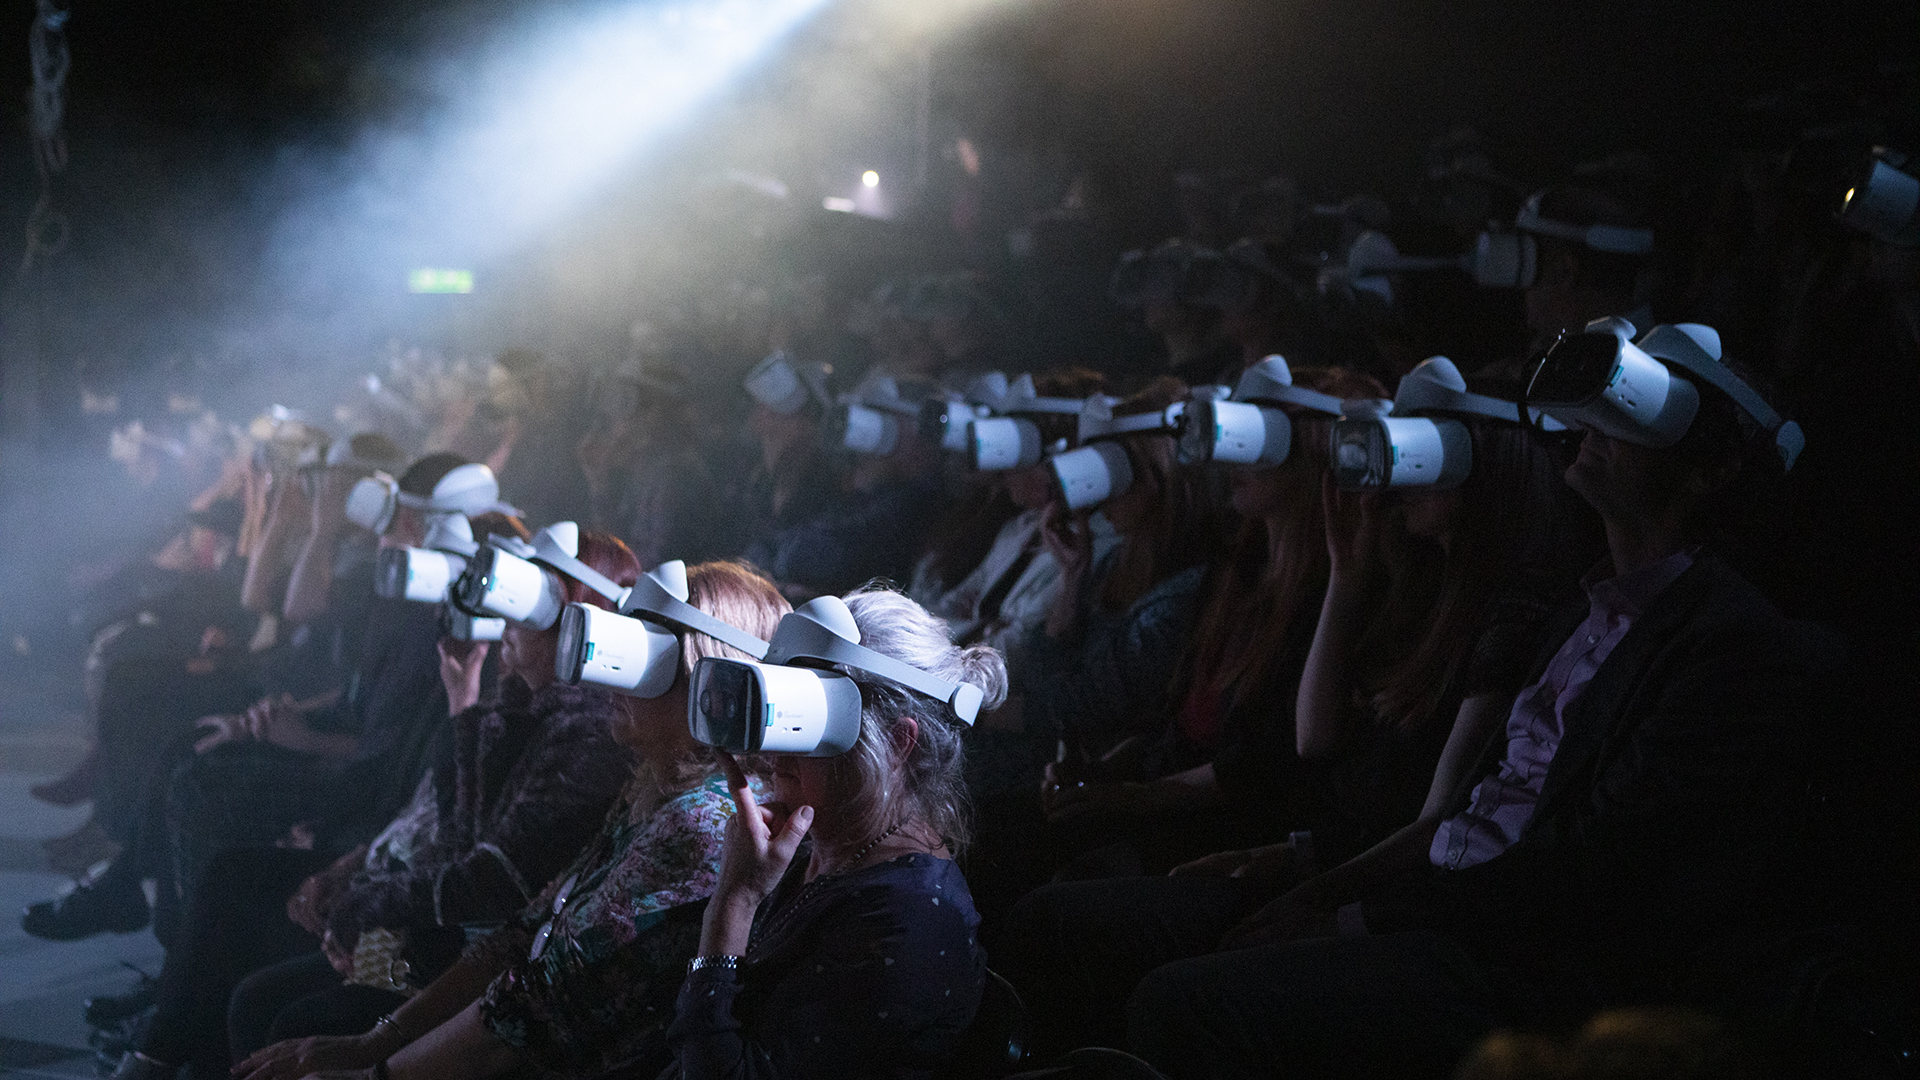 Cinema VR è la soluzione ideale per gestire in modo pratico e funzionale la visione (anche simultanea su più visori) di contenuti 360° su visori Oculus. Grazie a Cinema VR gli utenti dovranno semplicemente indossare i visori VR e sarà l'operatore, attraverso il dispositivo tablet, a gestire la visione dei contenuti. Ottimizzazione delle risorse ed esperienza utente ottimale, tutto questo è Cinema VR